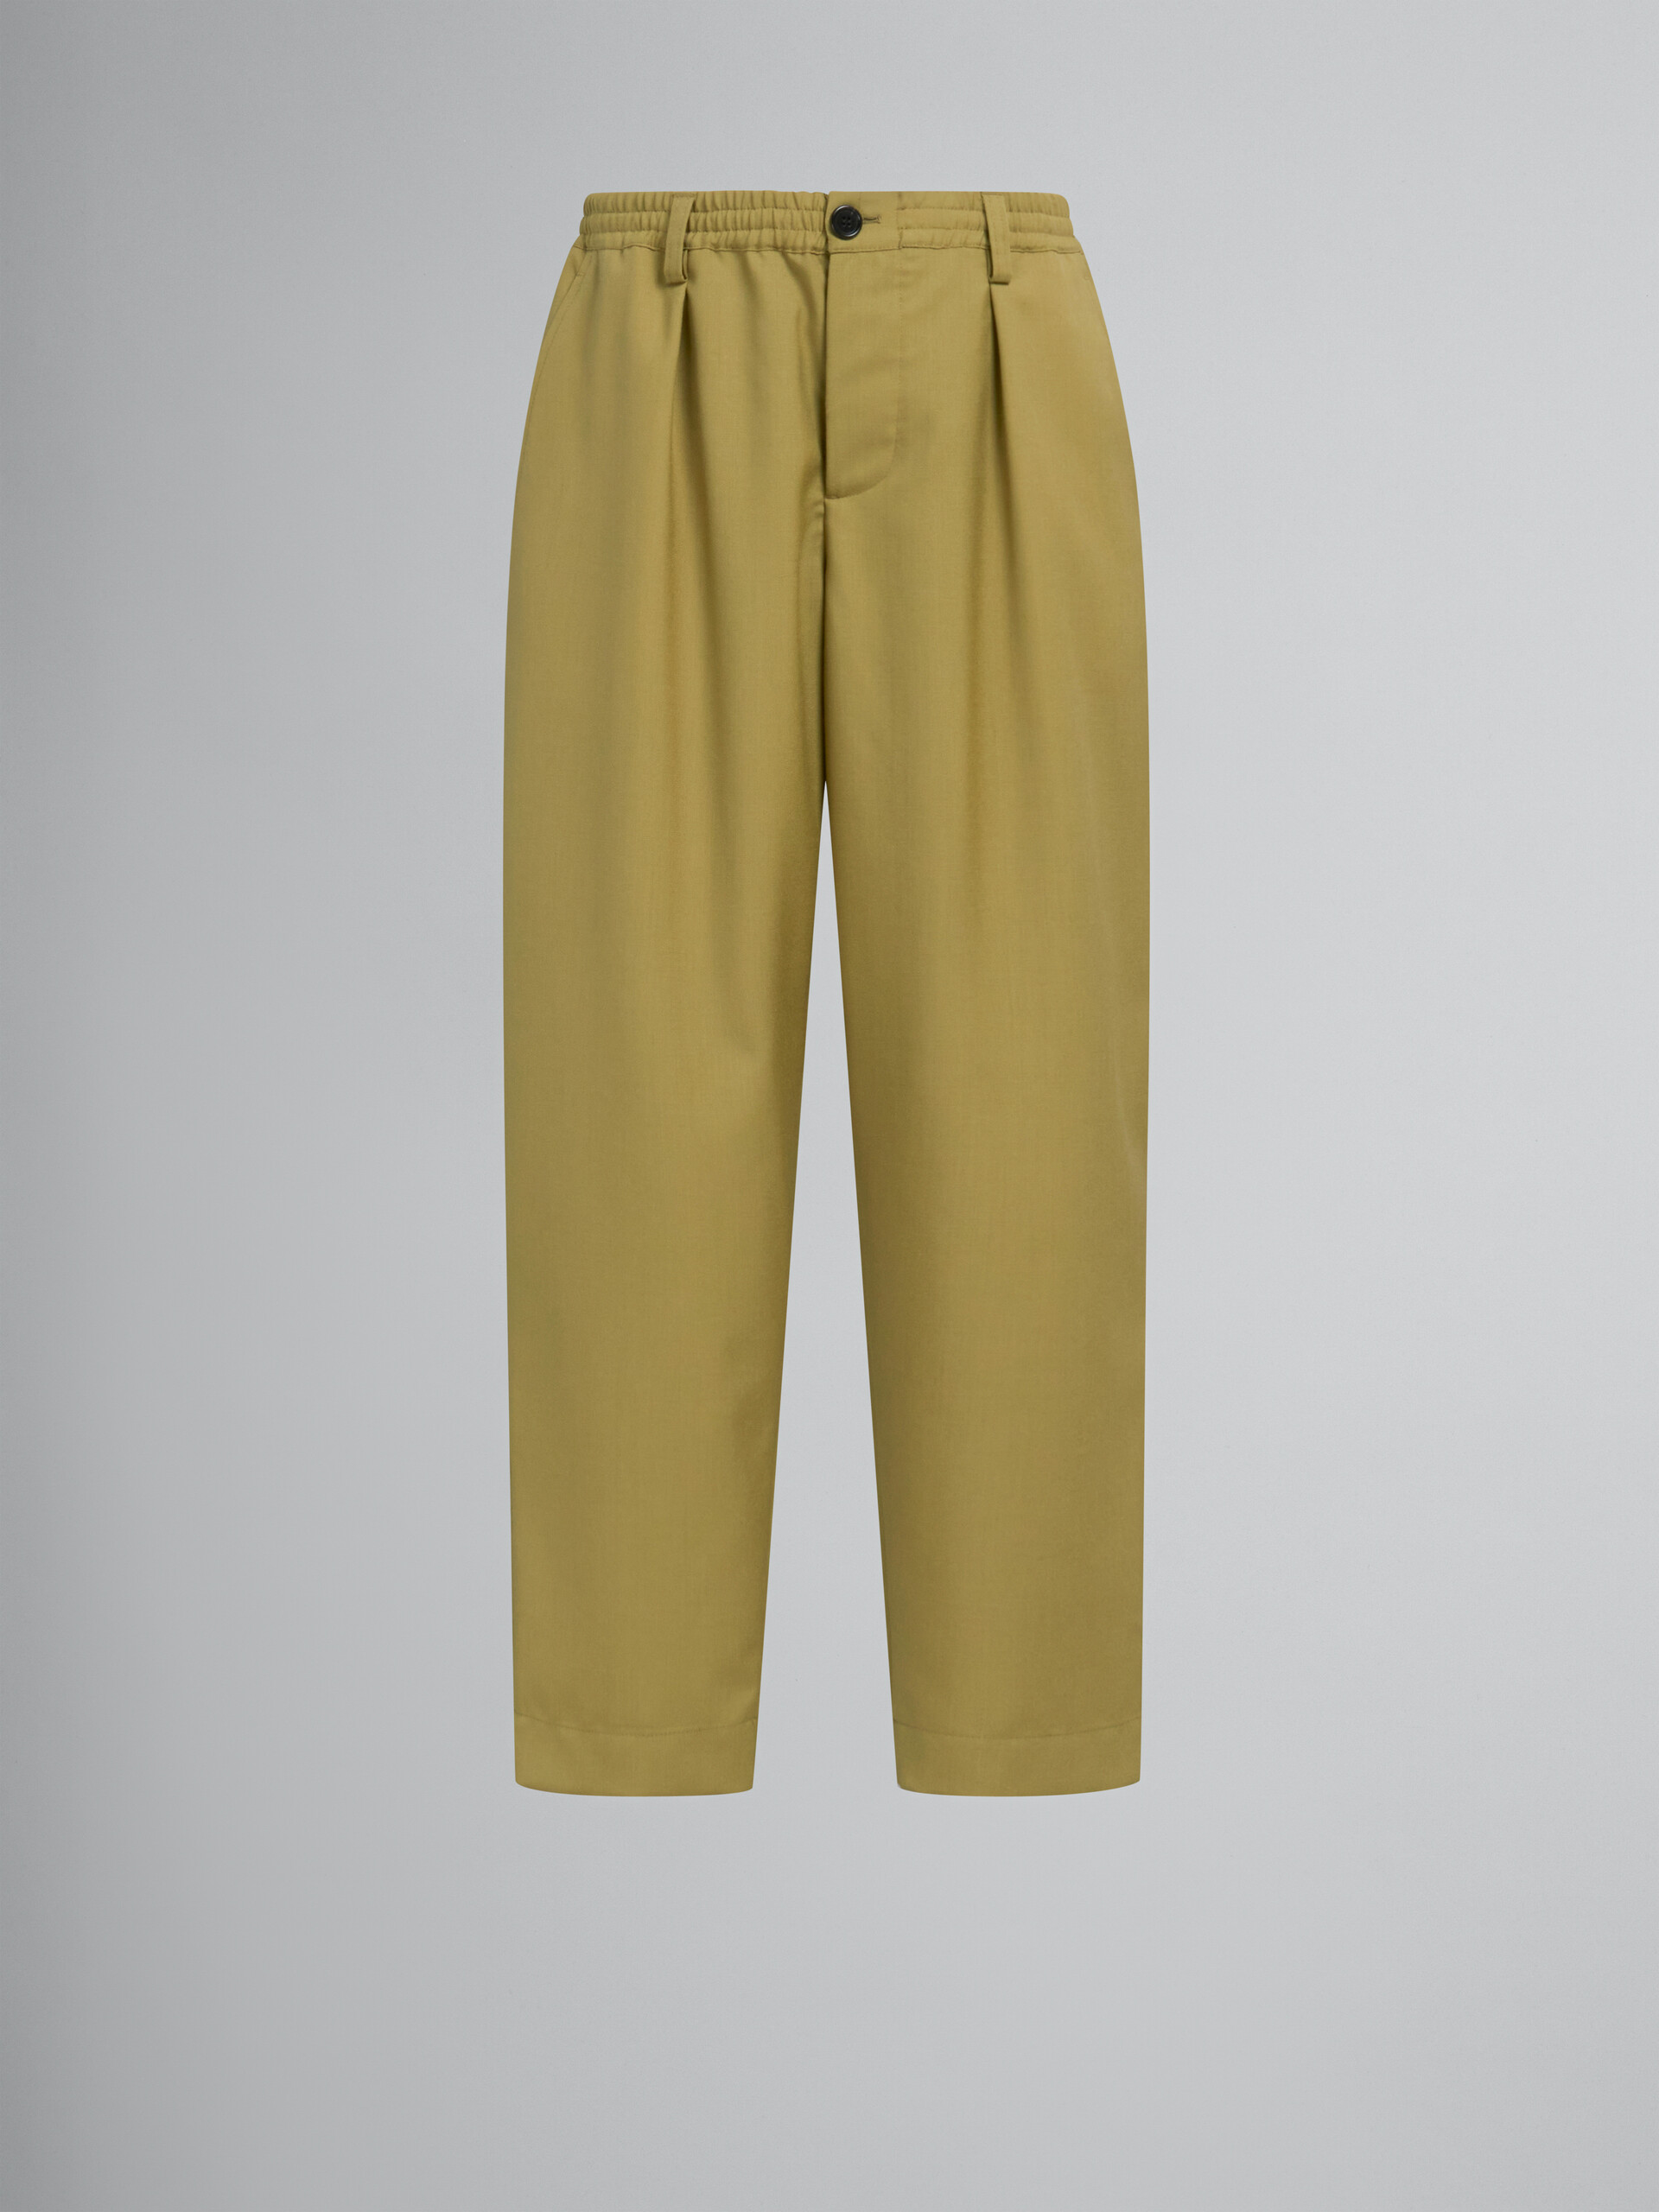 Dunkelblaue Hose aus Tropenwolle mit Kordelzug an der Taille - Hosen - Image 1